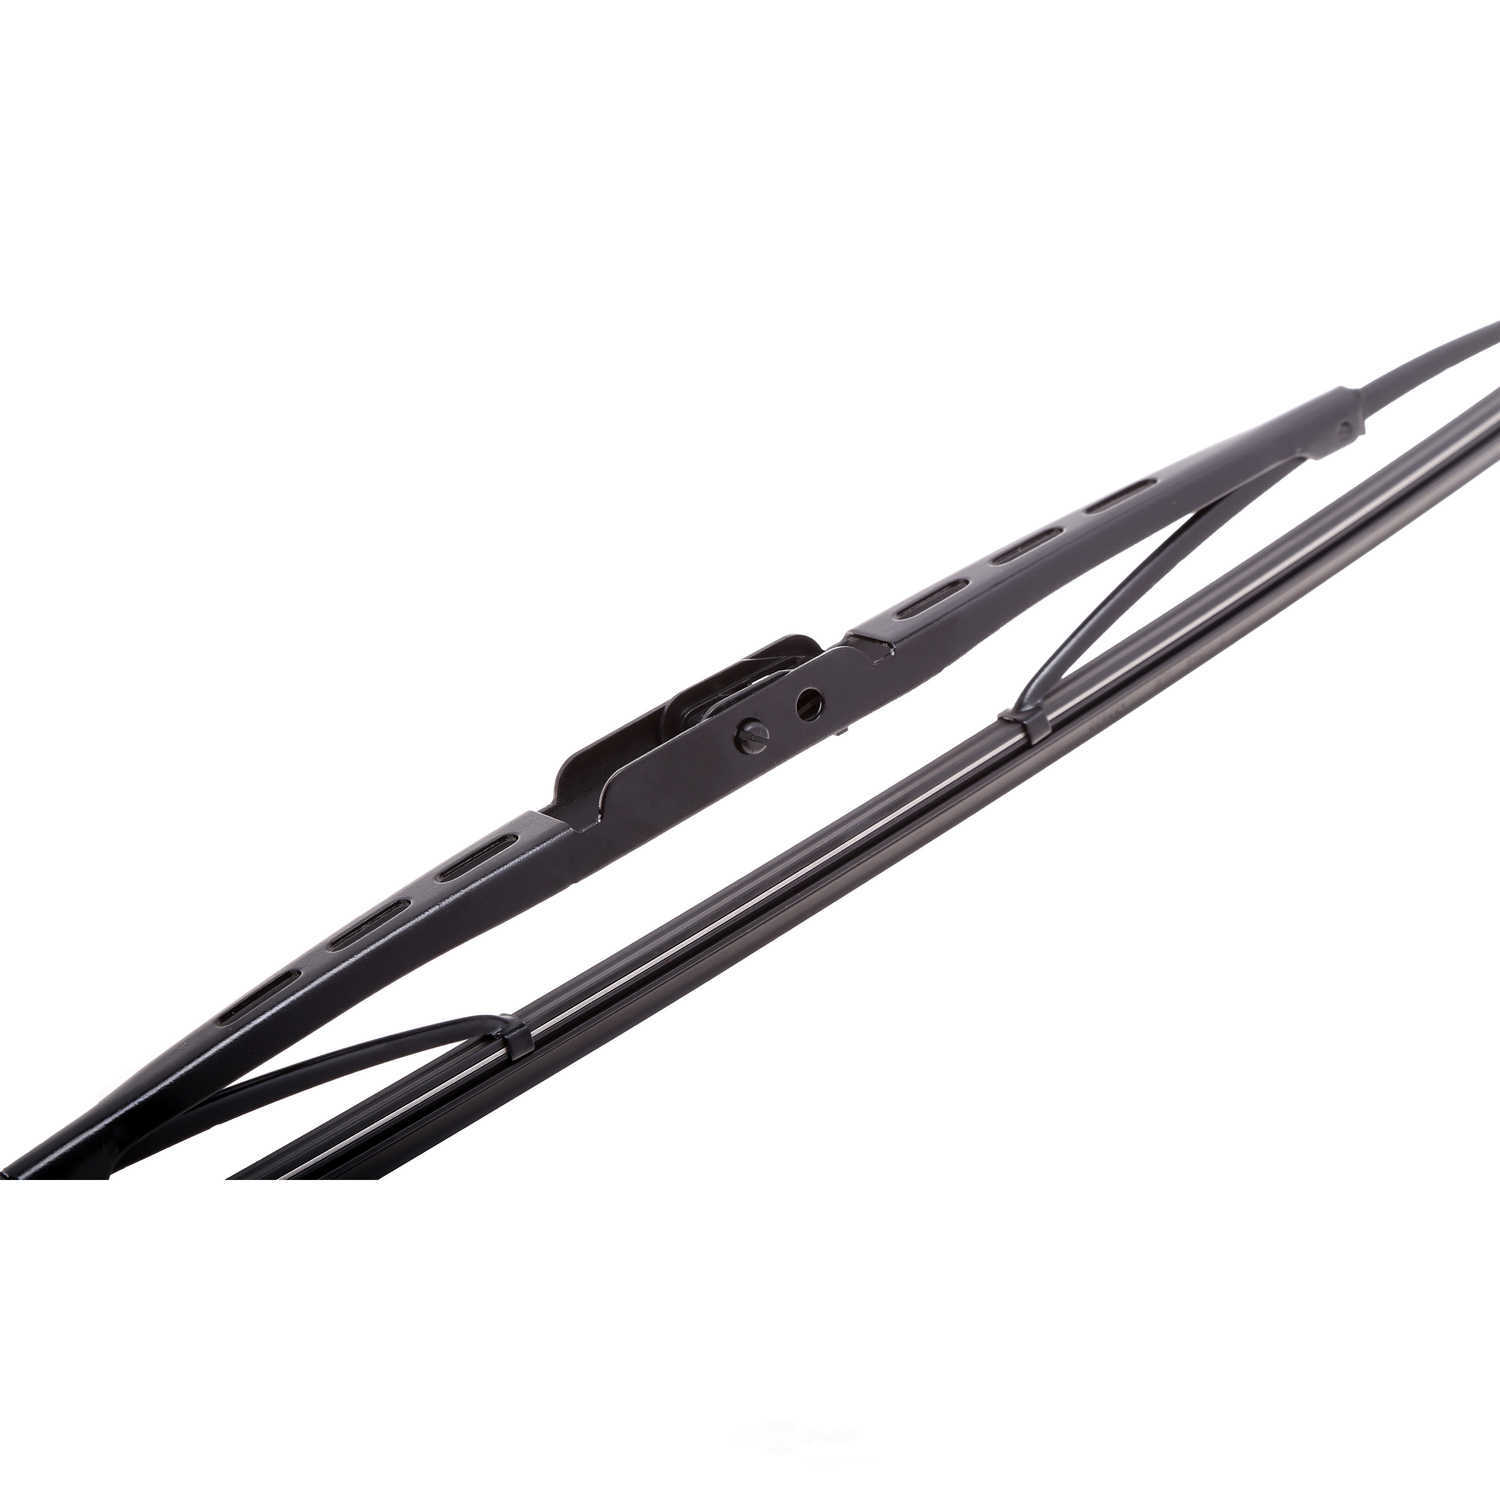 ANCO WIPER PRODUCTS - ANCO 97-Series Wiper Blade - ANC 97-16